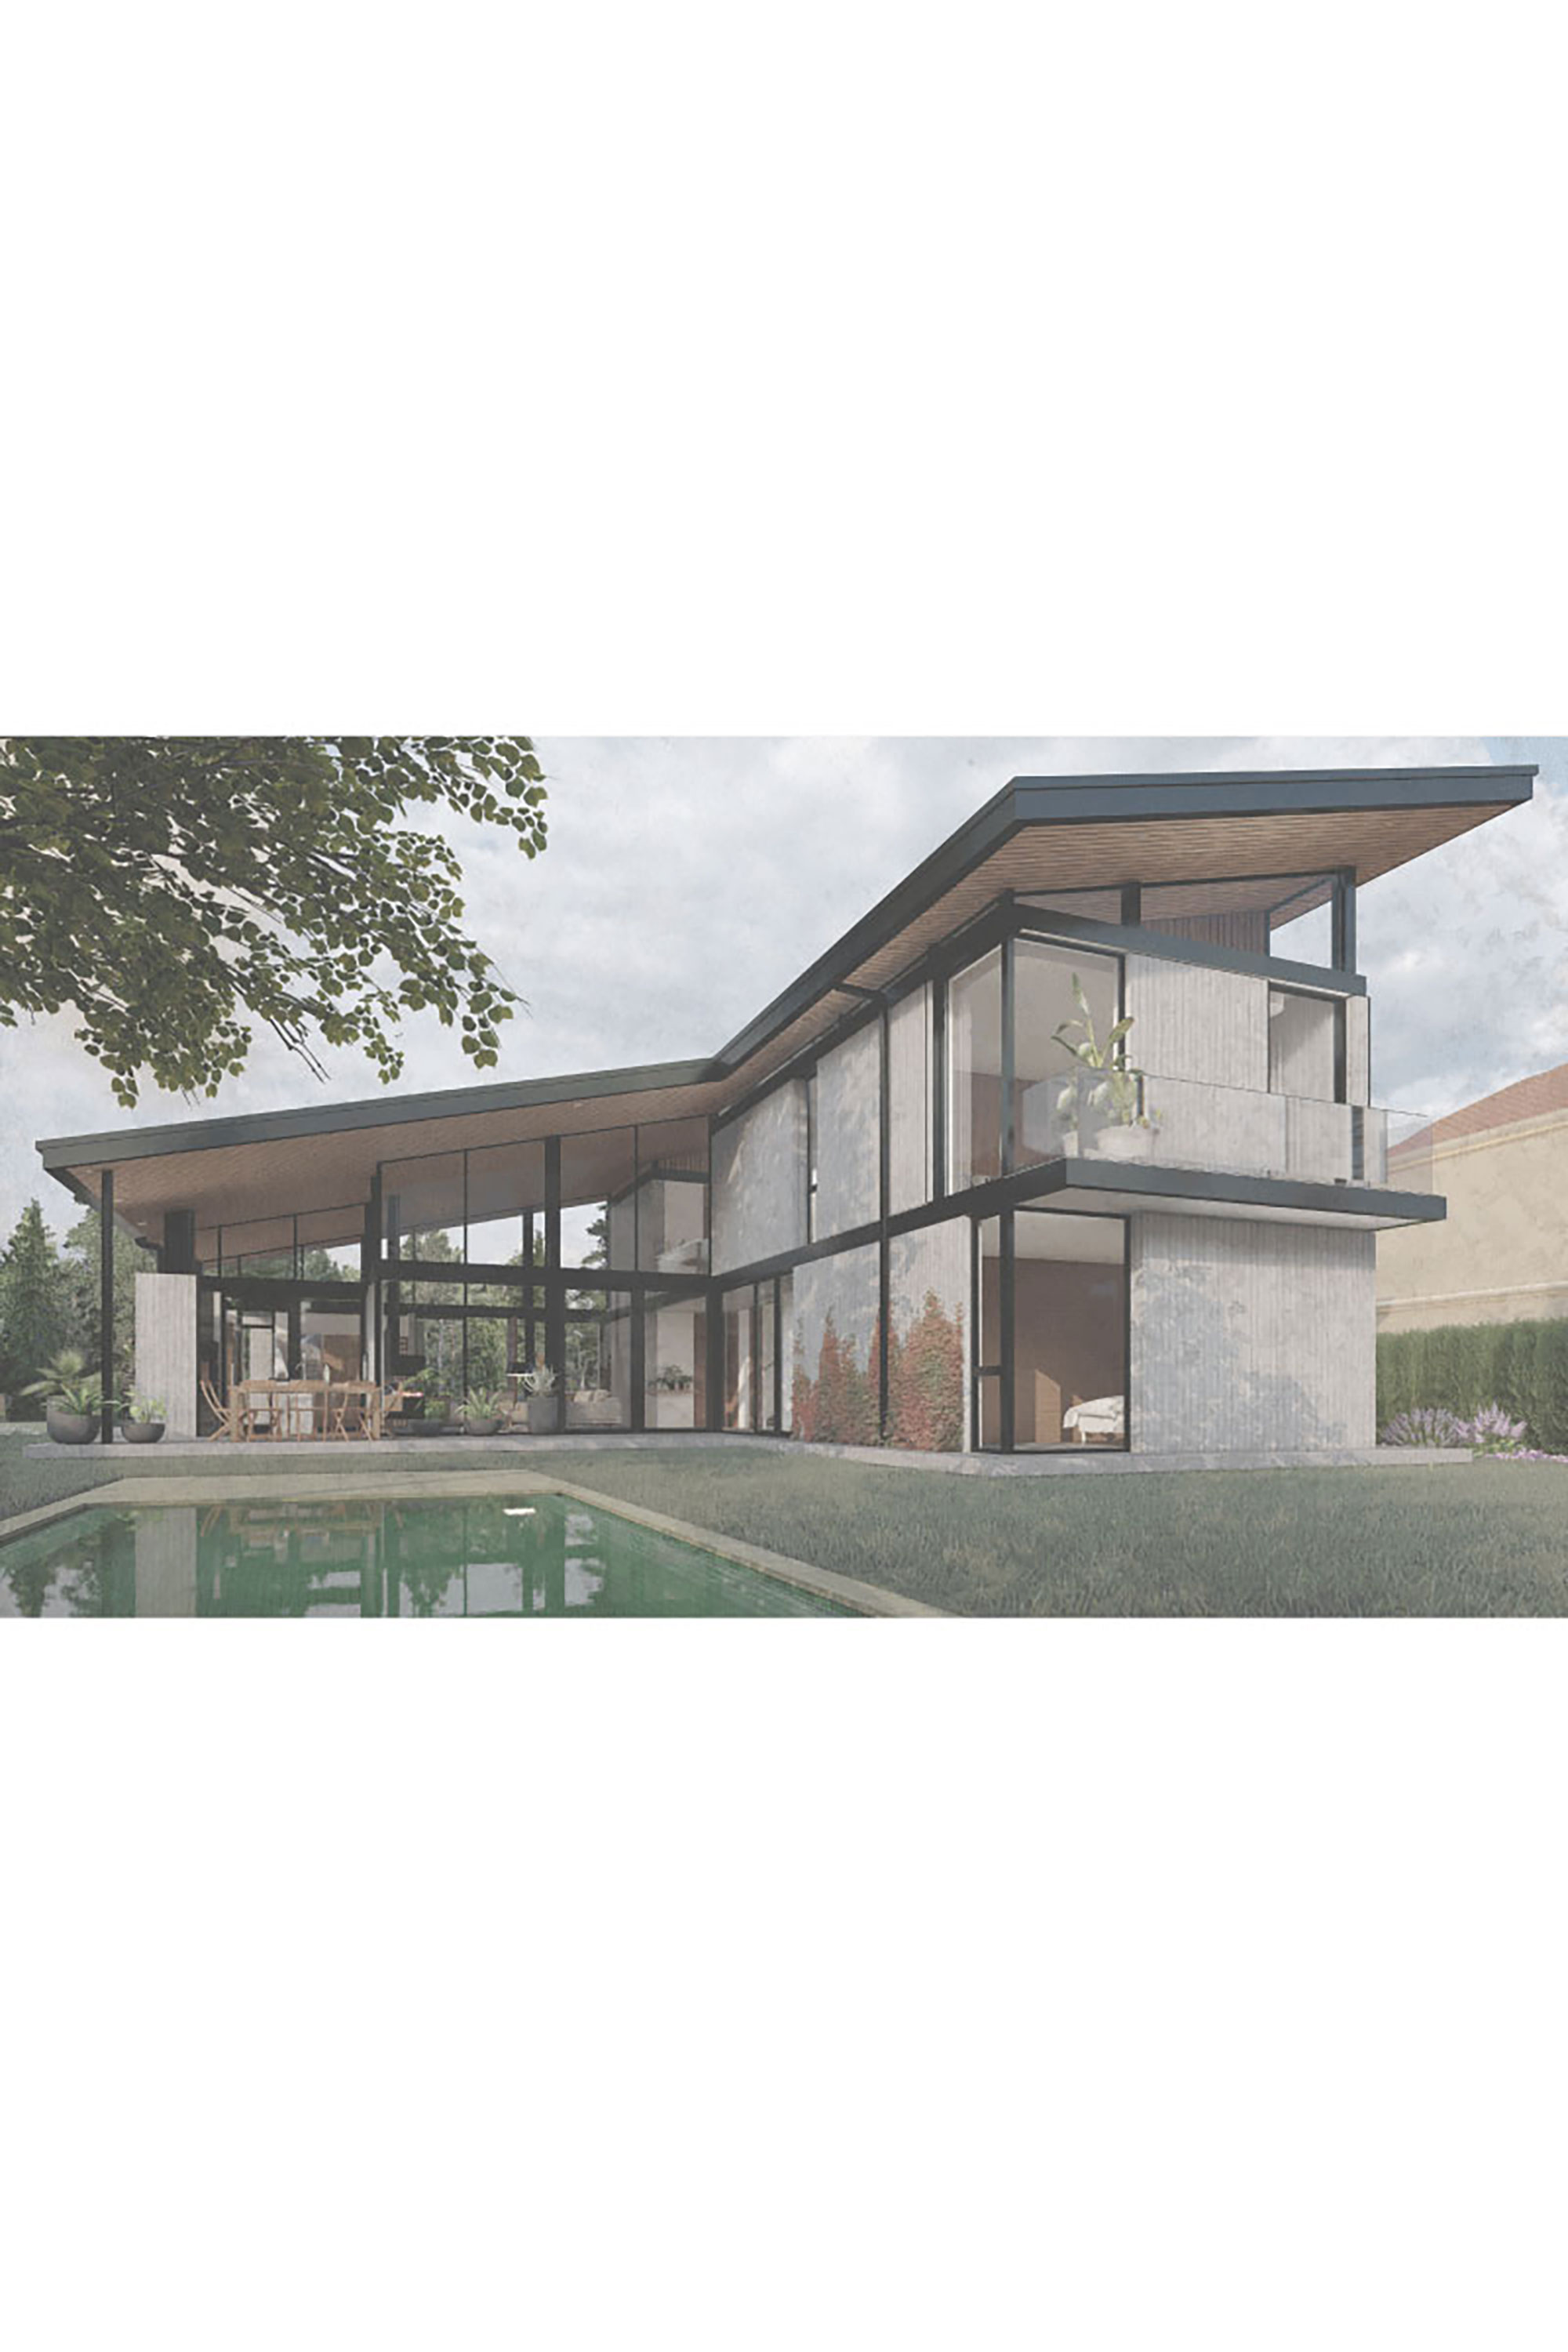 Casa Terralagos 730 ||| Canning ||| DRM Ariquitectura